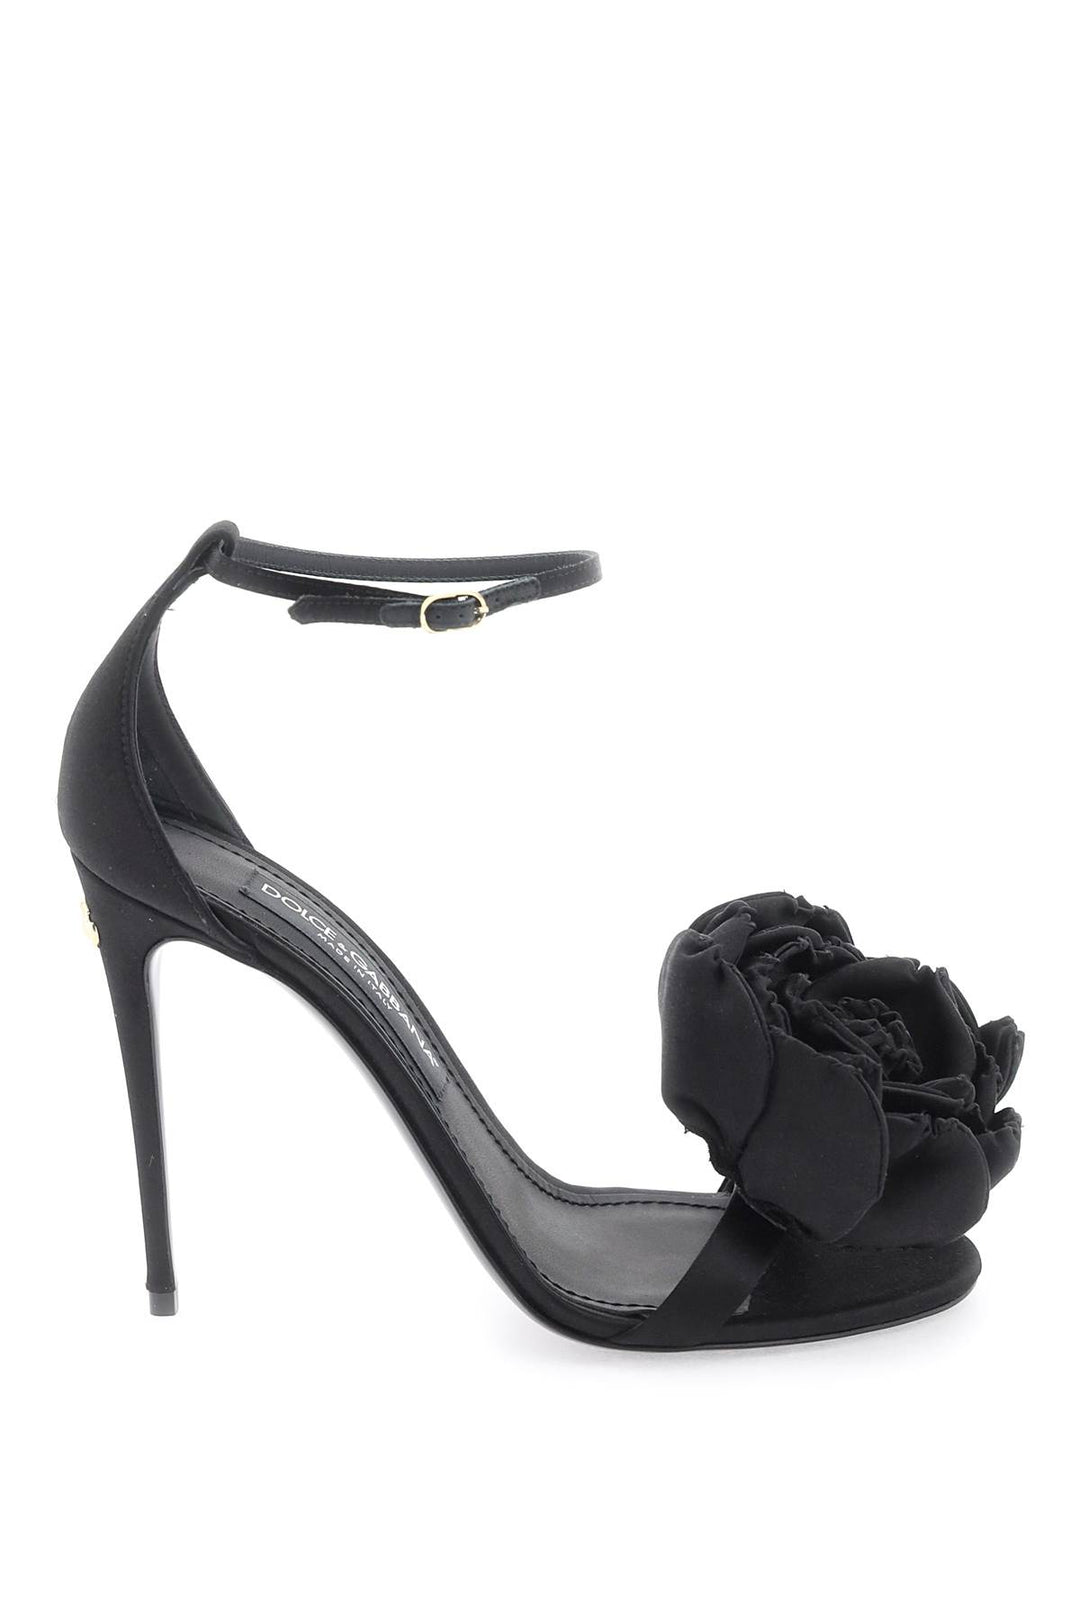 Dolce & Gabbana Satin Sandals   Black